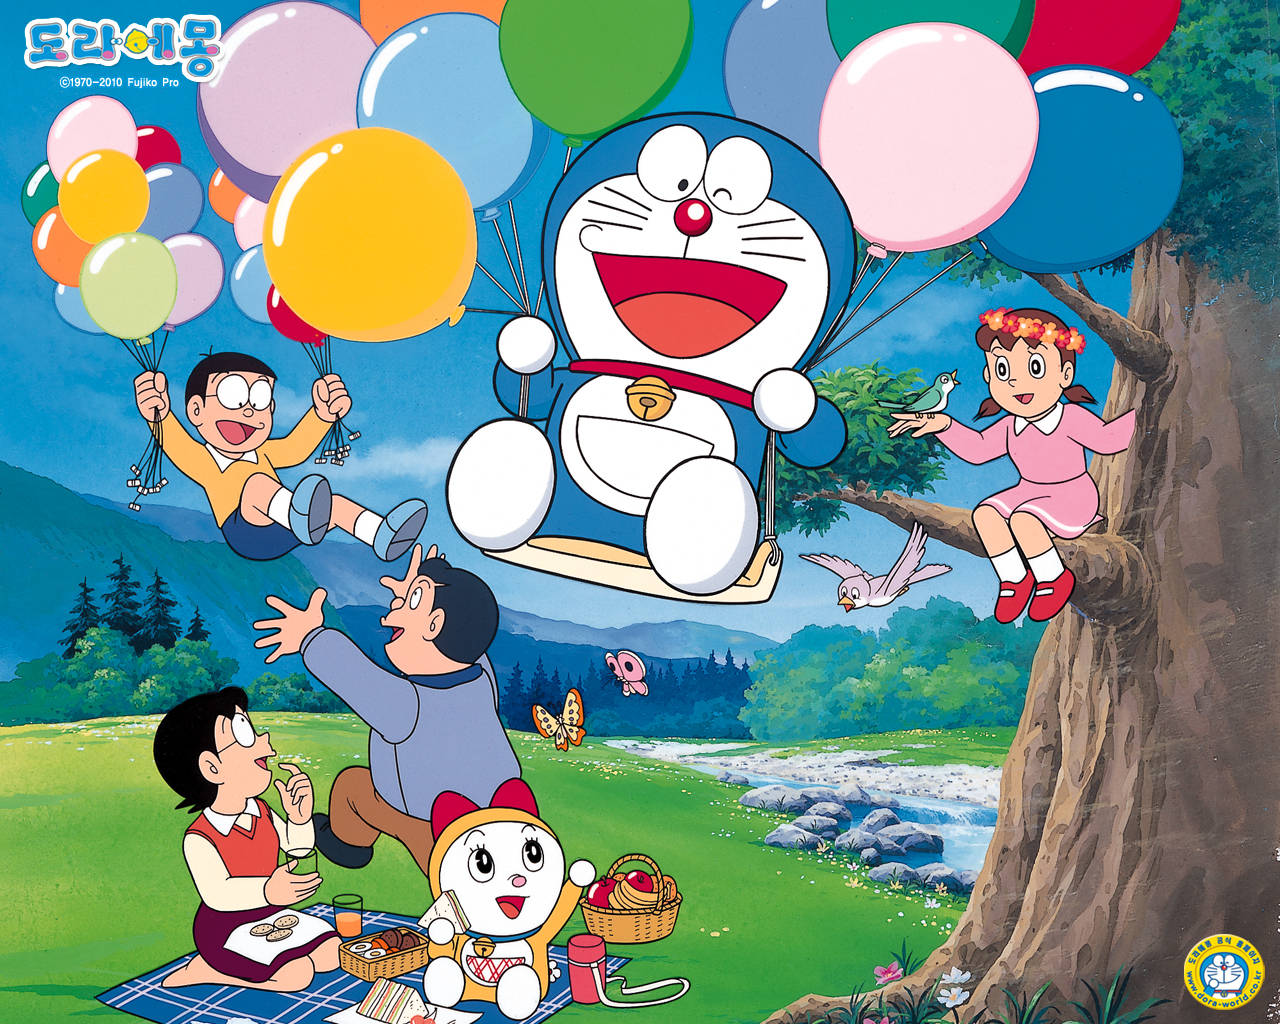 Doraemon backgrounds for free